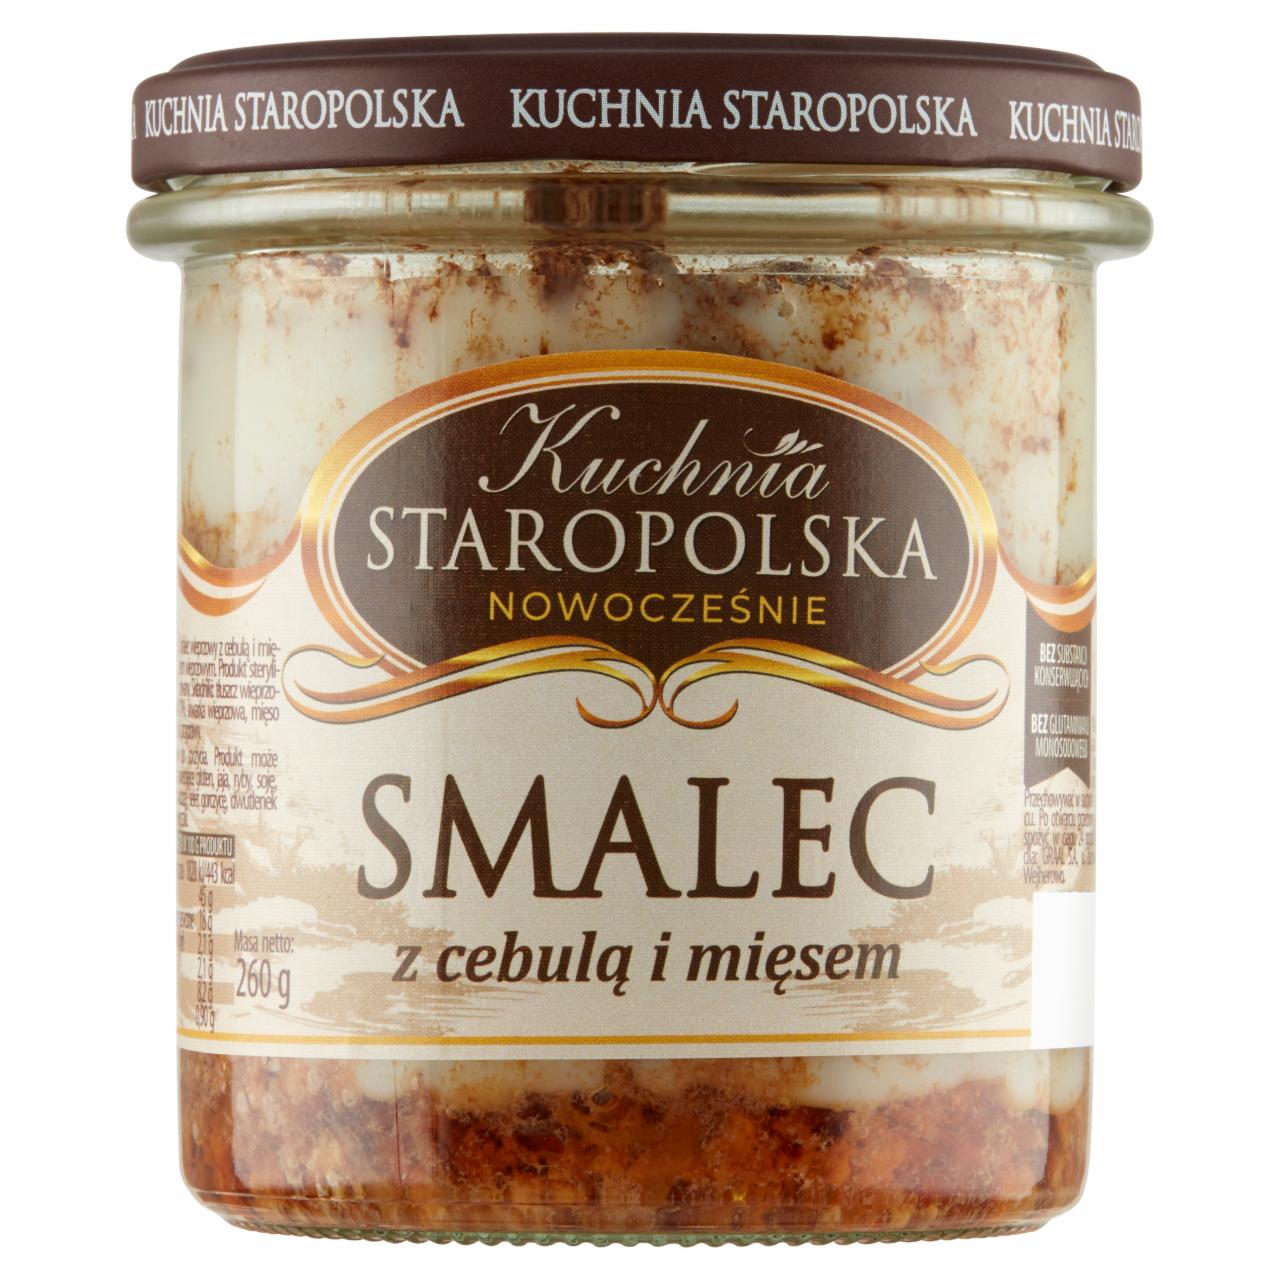 Zdjęcia - Kuchnia STAROPOLSKA Premium Smalec z cebulą i mięsem 260 g